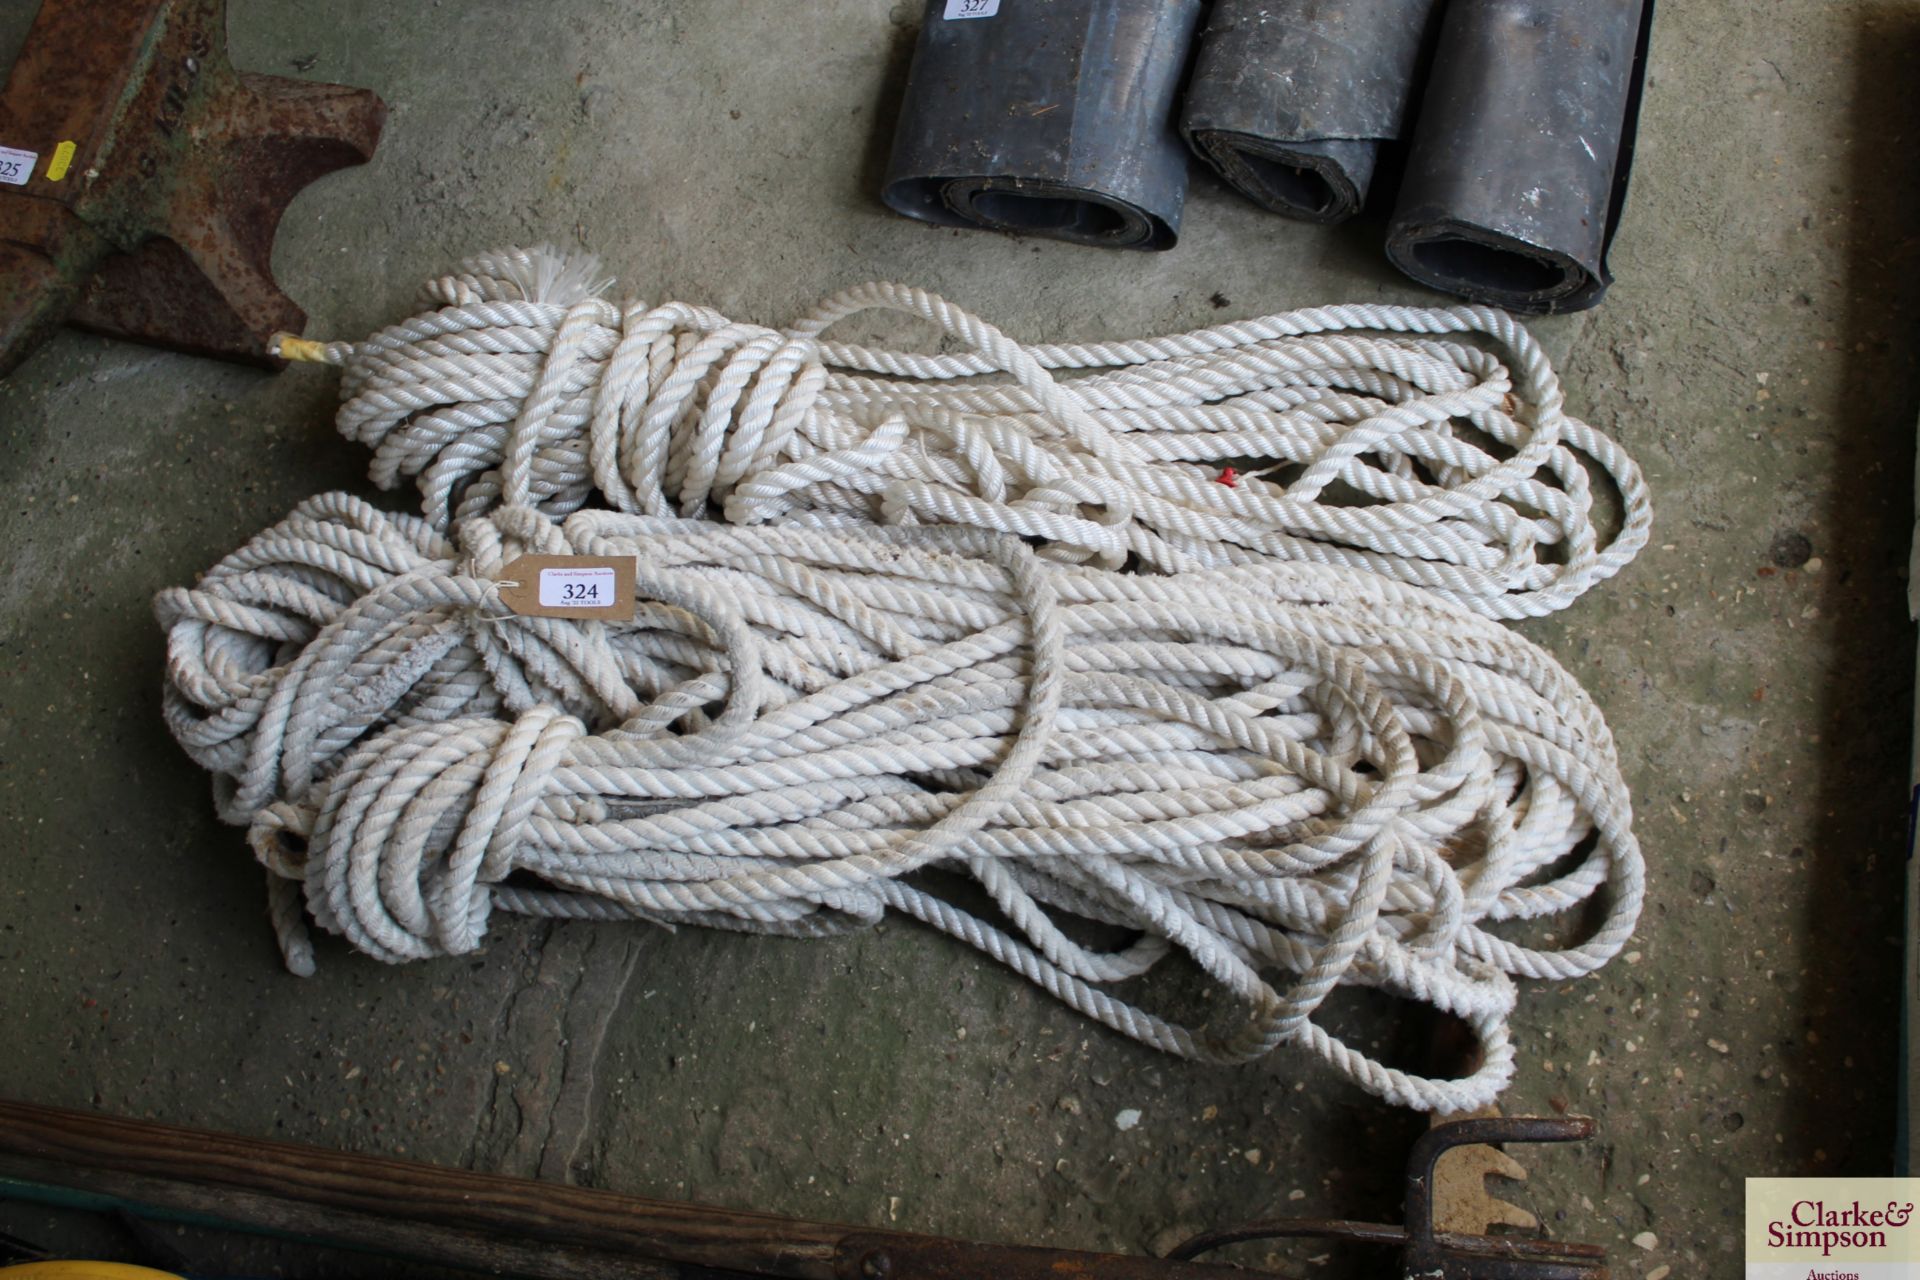 Quantity of rope.